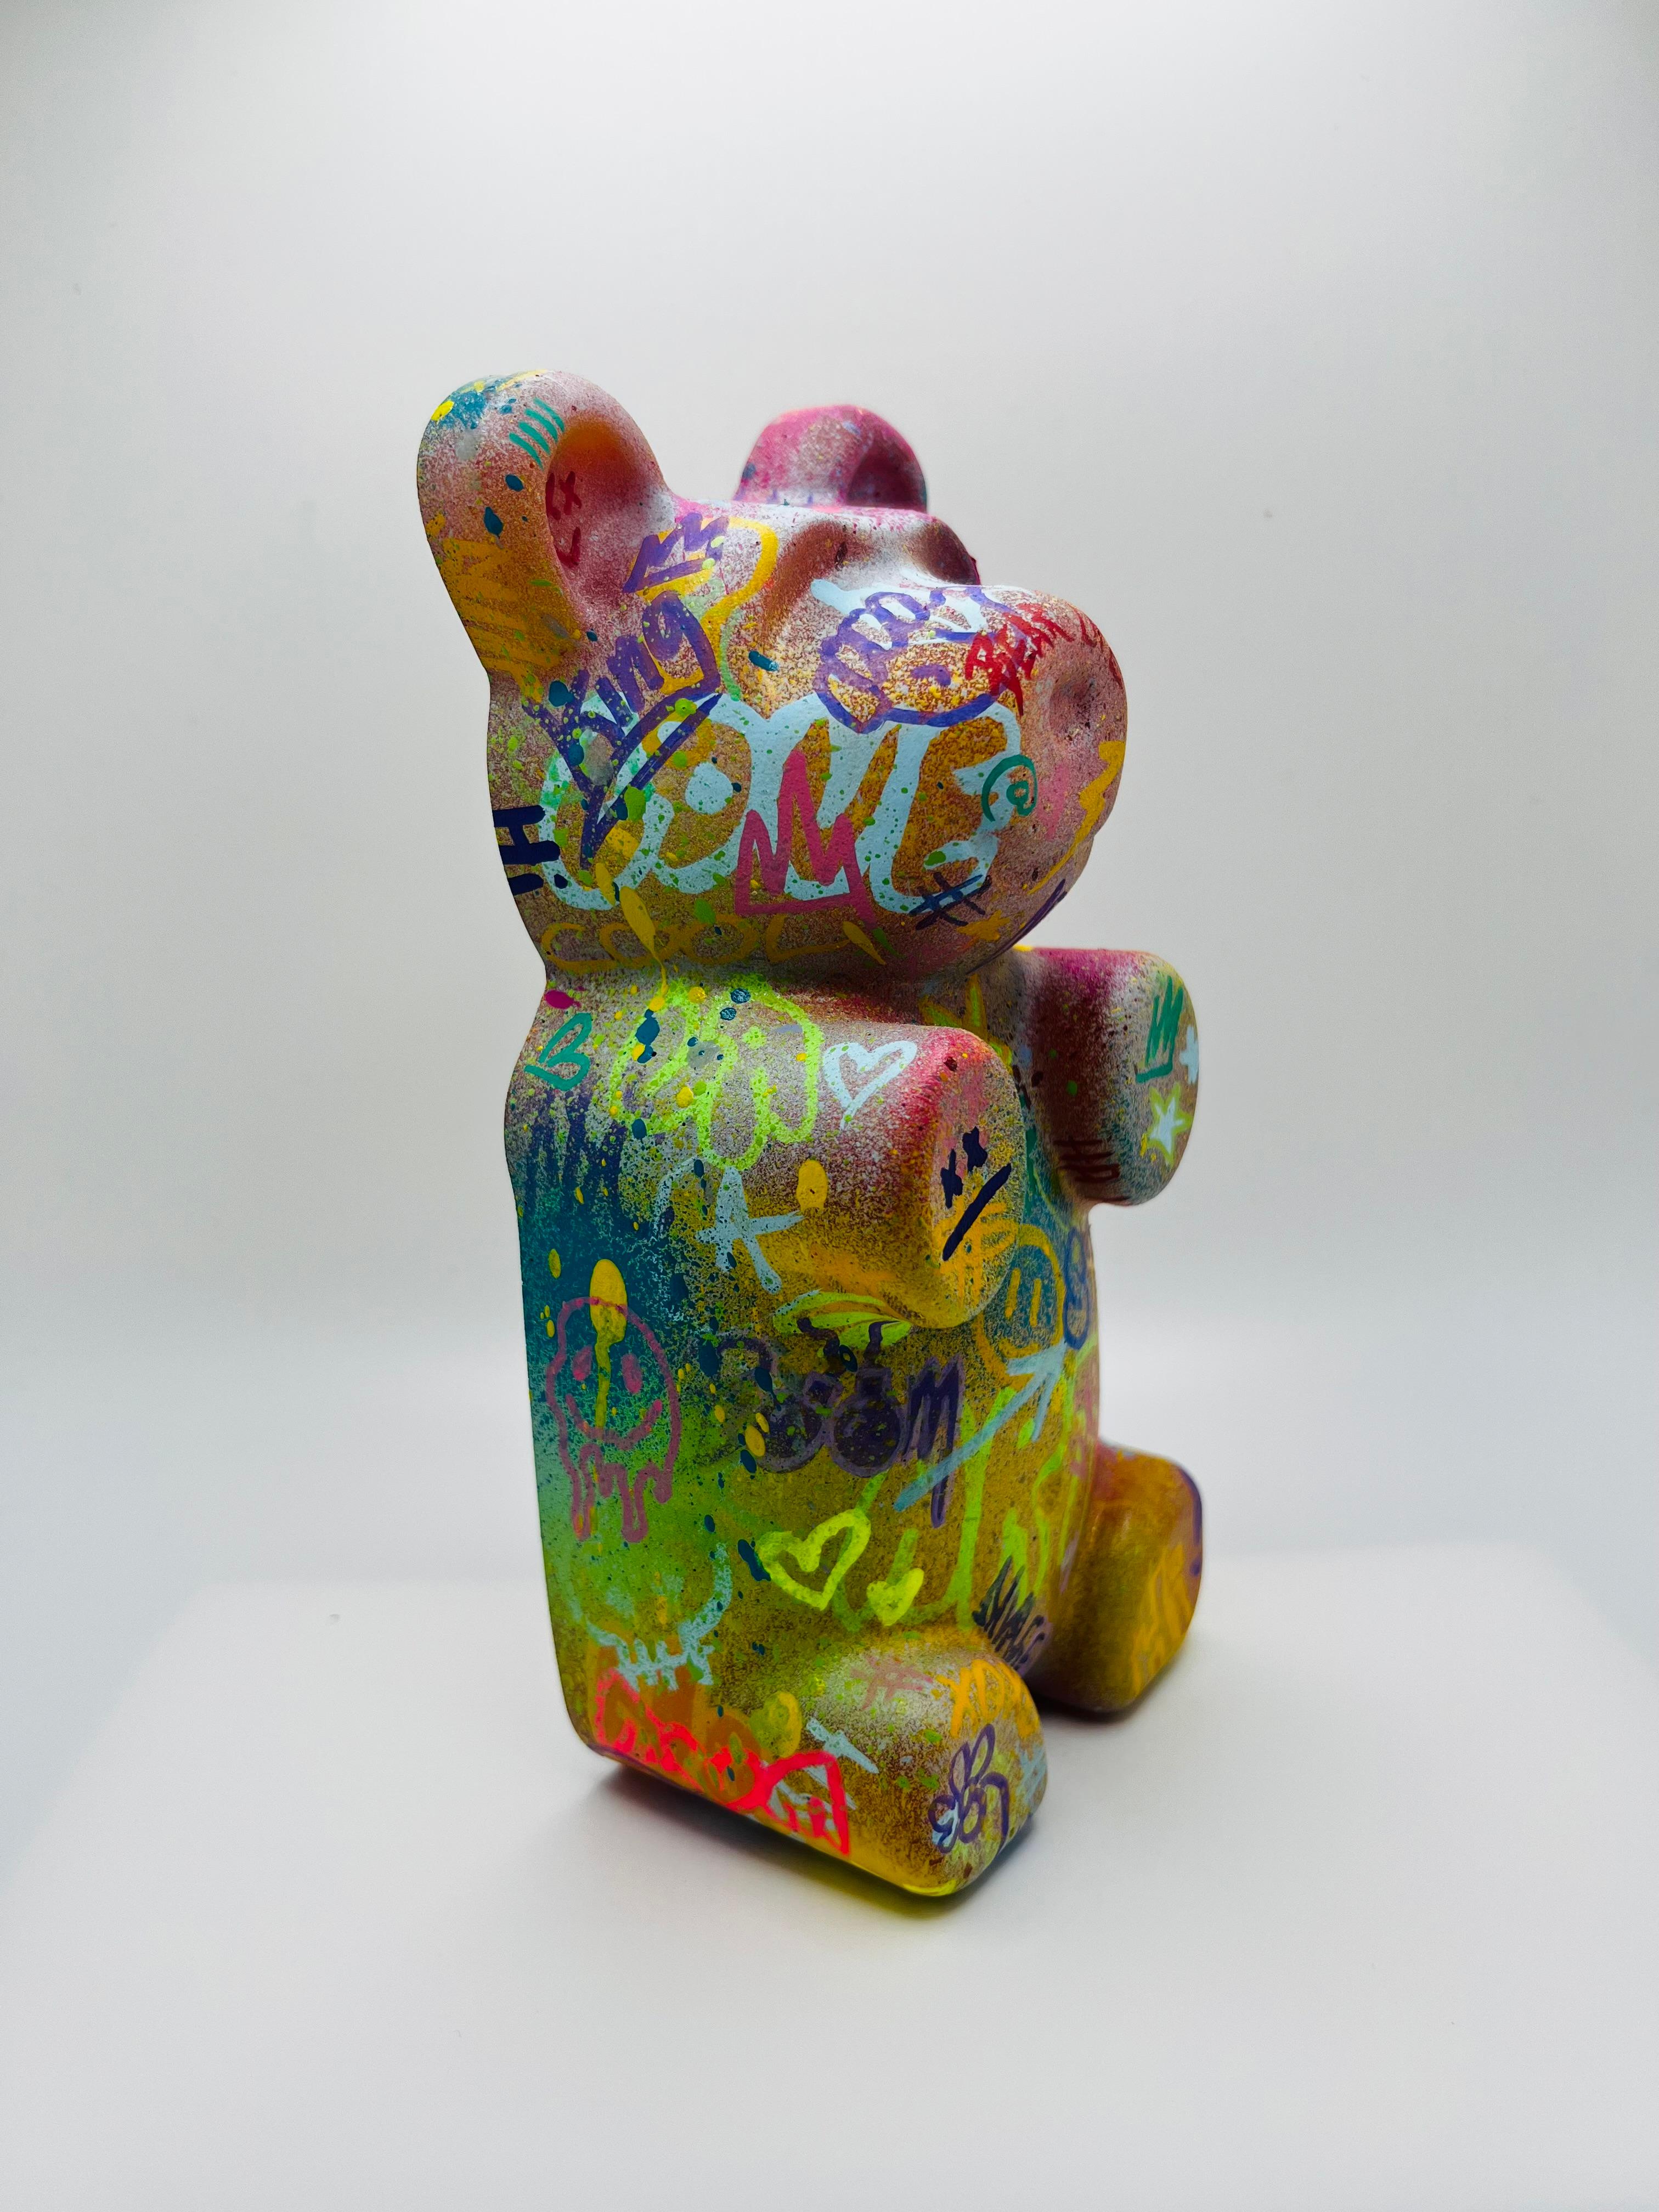 Graffiti Gummibärchen 1, Street Art, Pop Art, farbig, zeitgenössisch, Skulptur (Zeitgenössisch), Sculpture, von Sahara Novotny